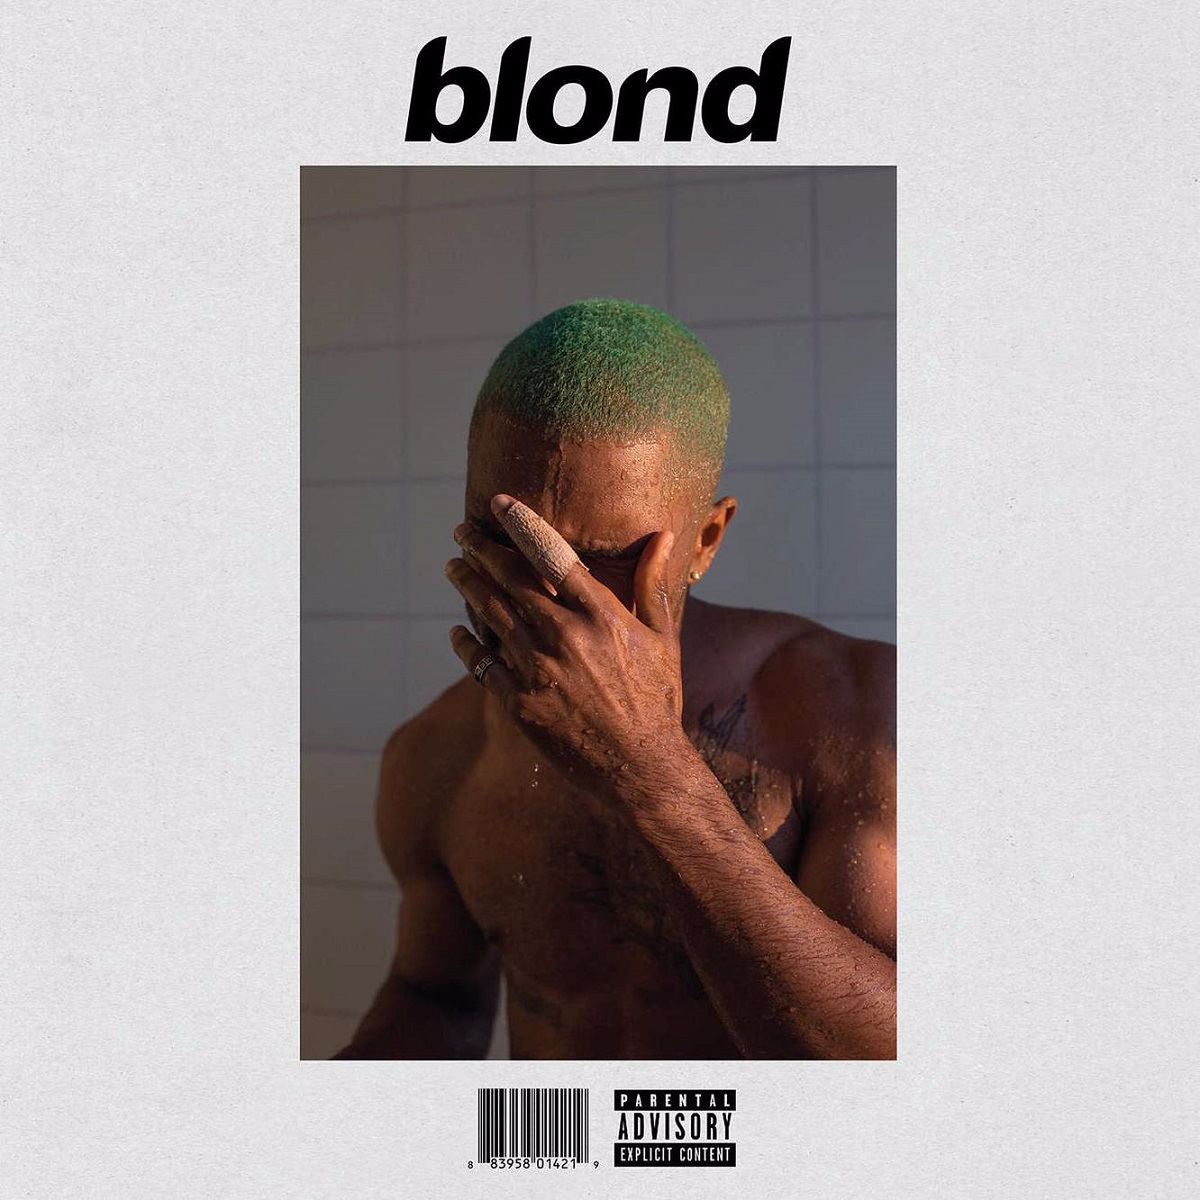 blonde on blonde album cover